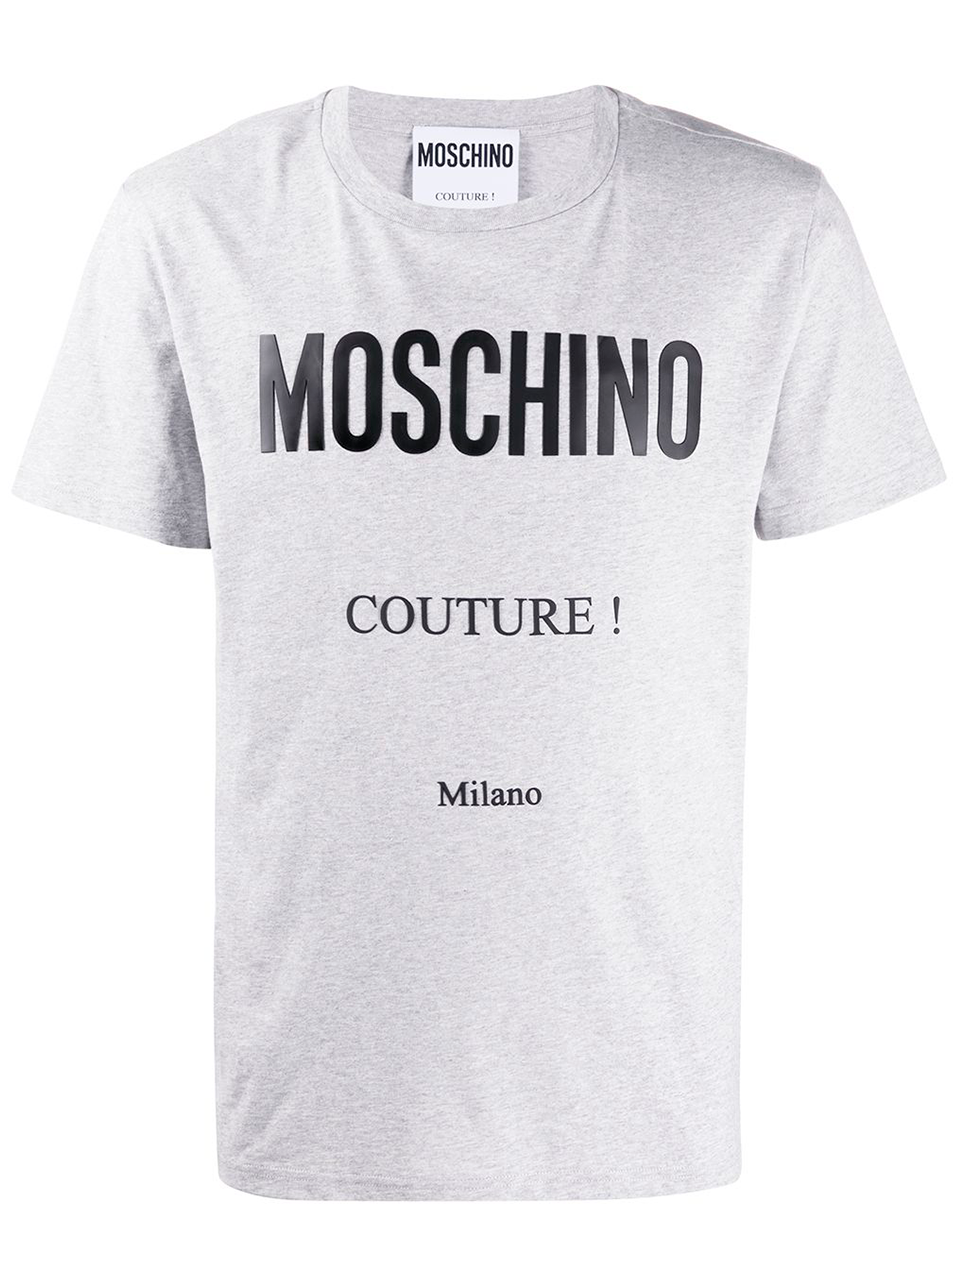 Imagem de: Camiseta Moschino Cinza com Logo Couture Preto